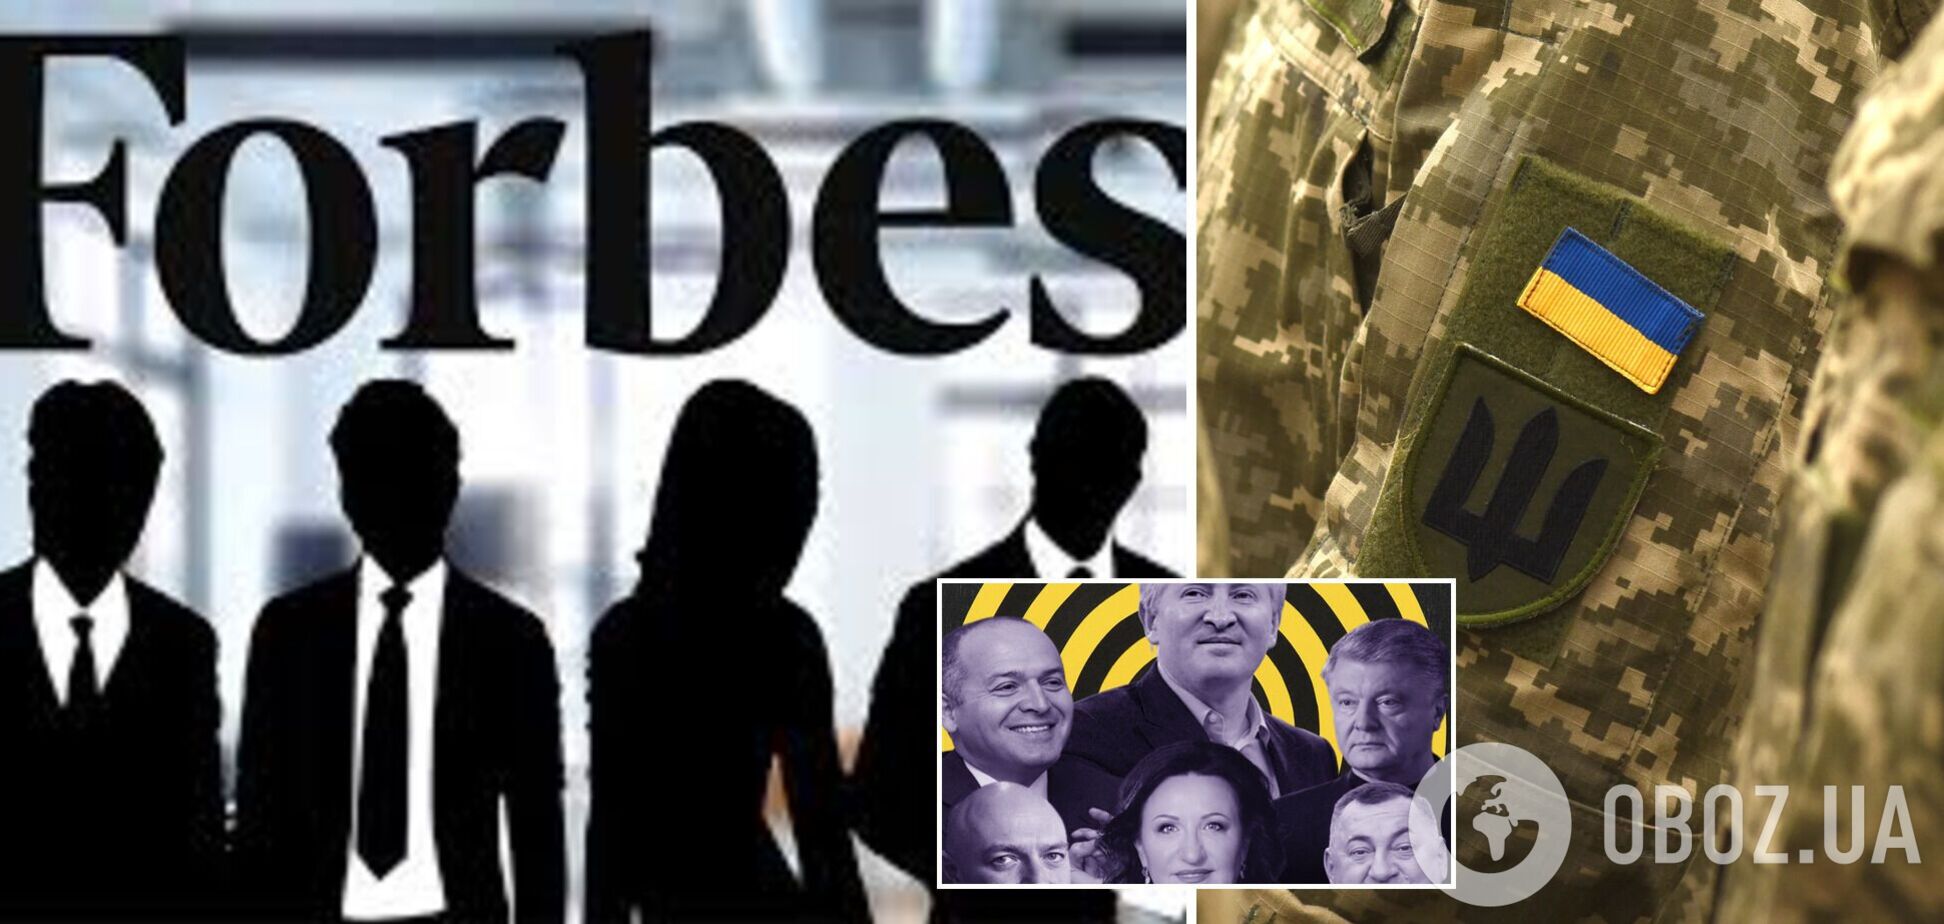 Forbes Украина обновил список меценатов, помогающих ВСУ: в него добавили Веревского, Чечеткина, Столара, Ложкина и других